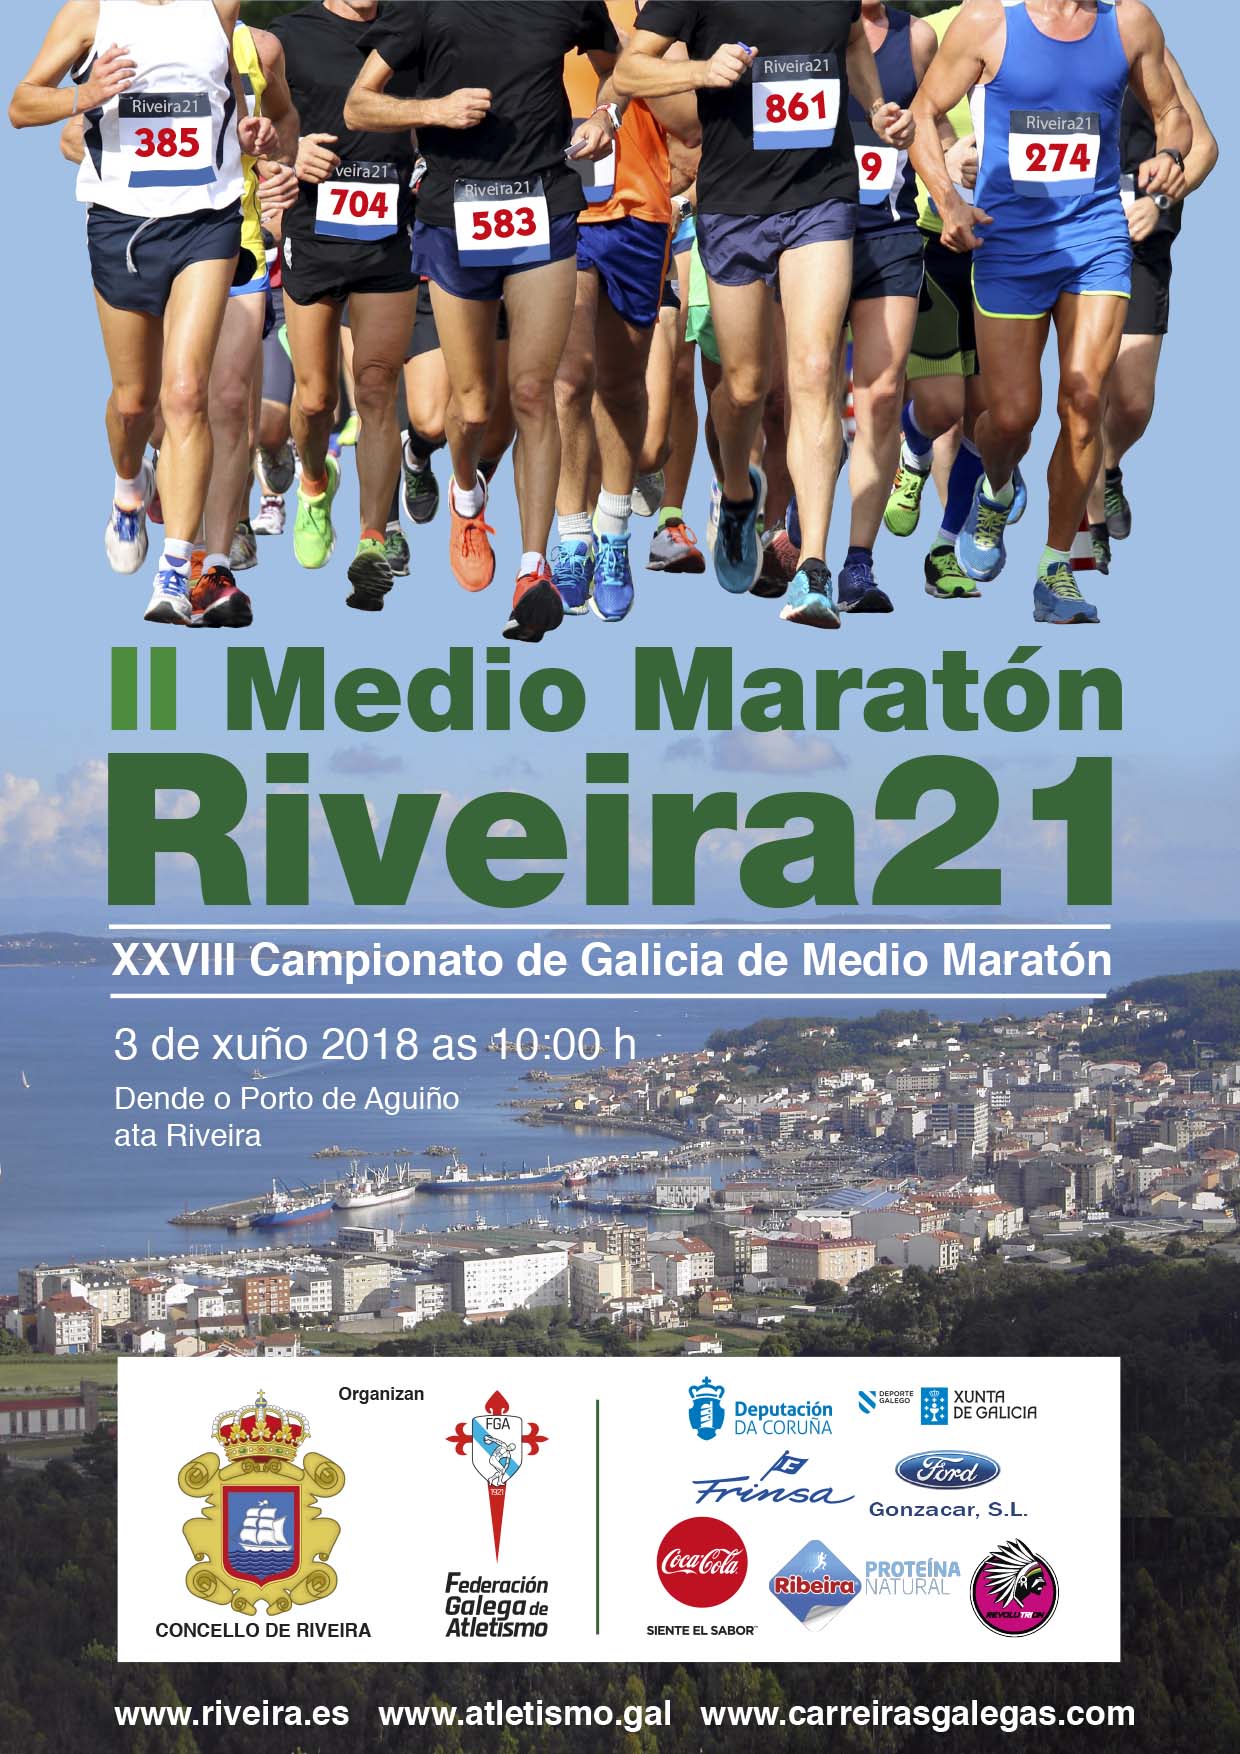 XXVIII Campionato de Galicia de Medio Maratón